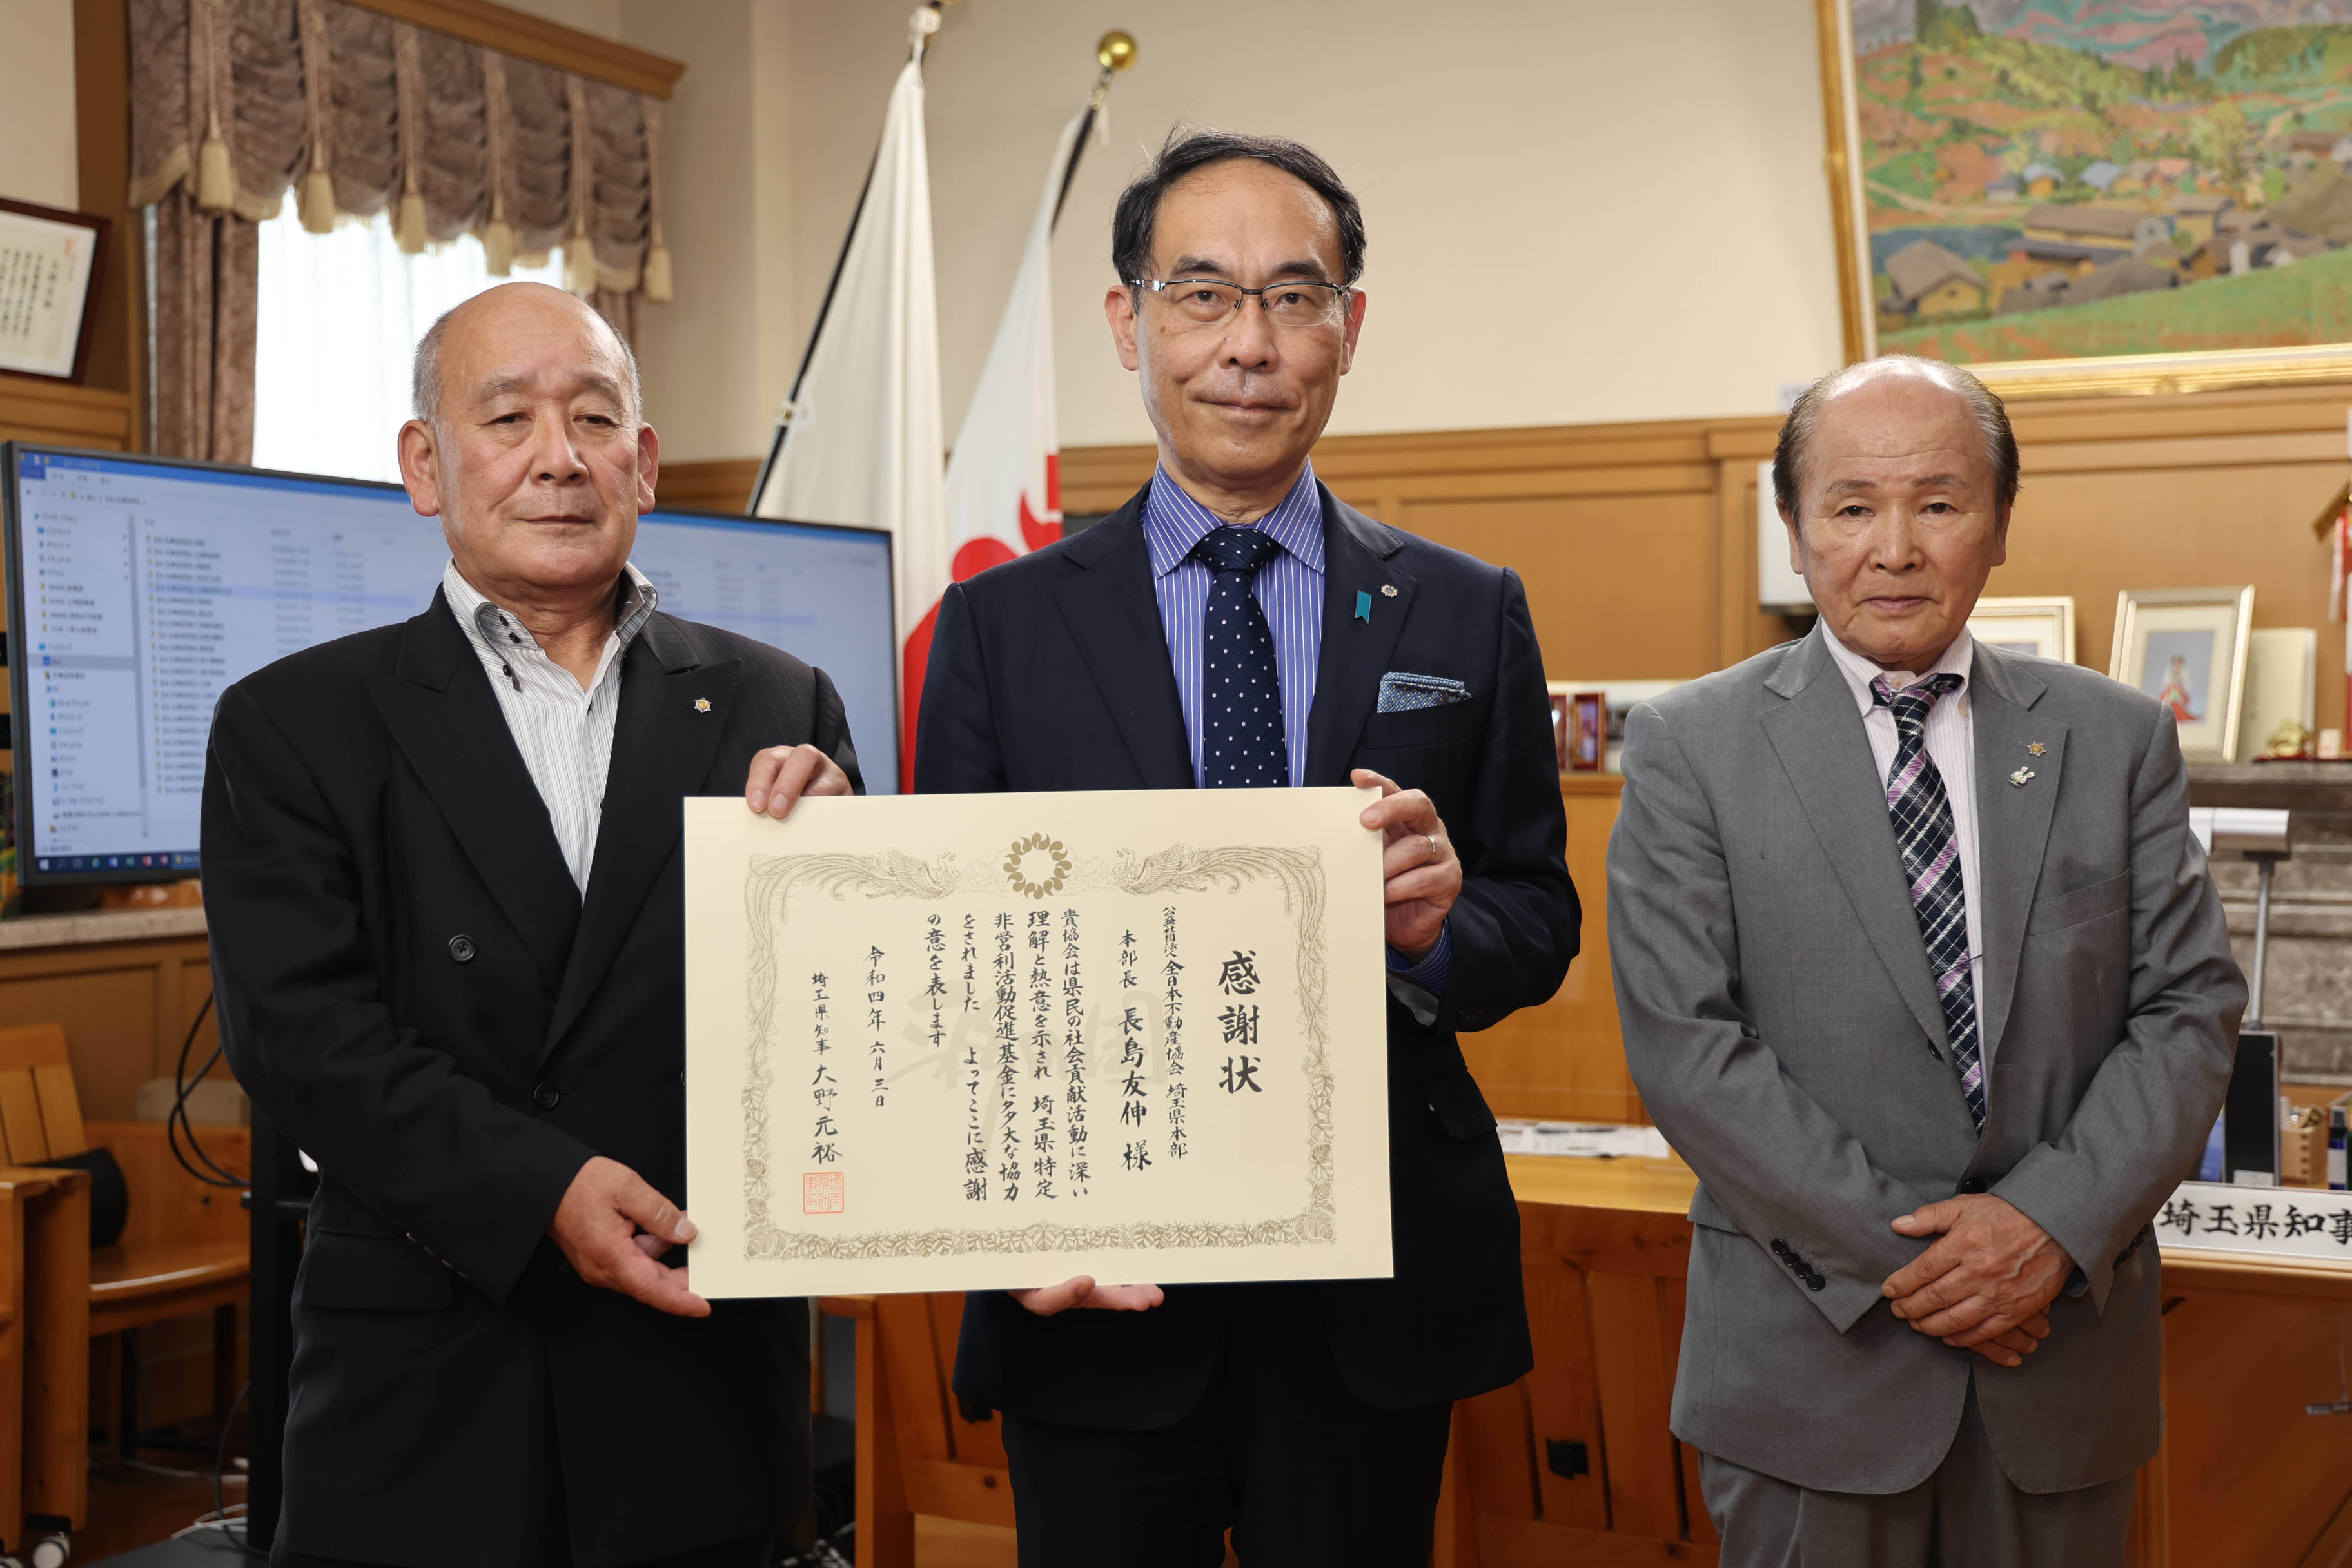 「埼玉県特定非営利活動促進基金」感謝状贈呈式に出席する知事